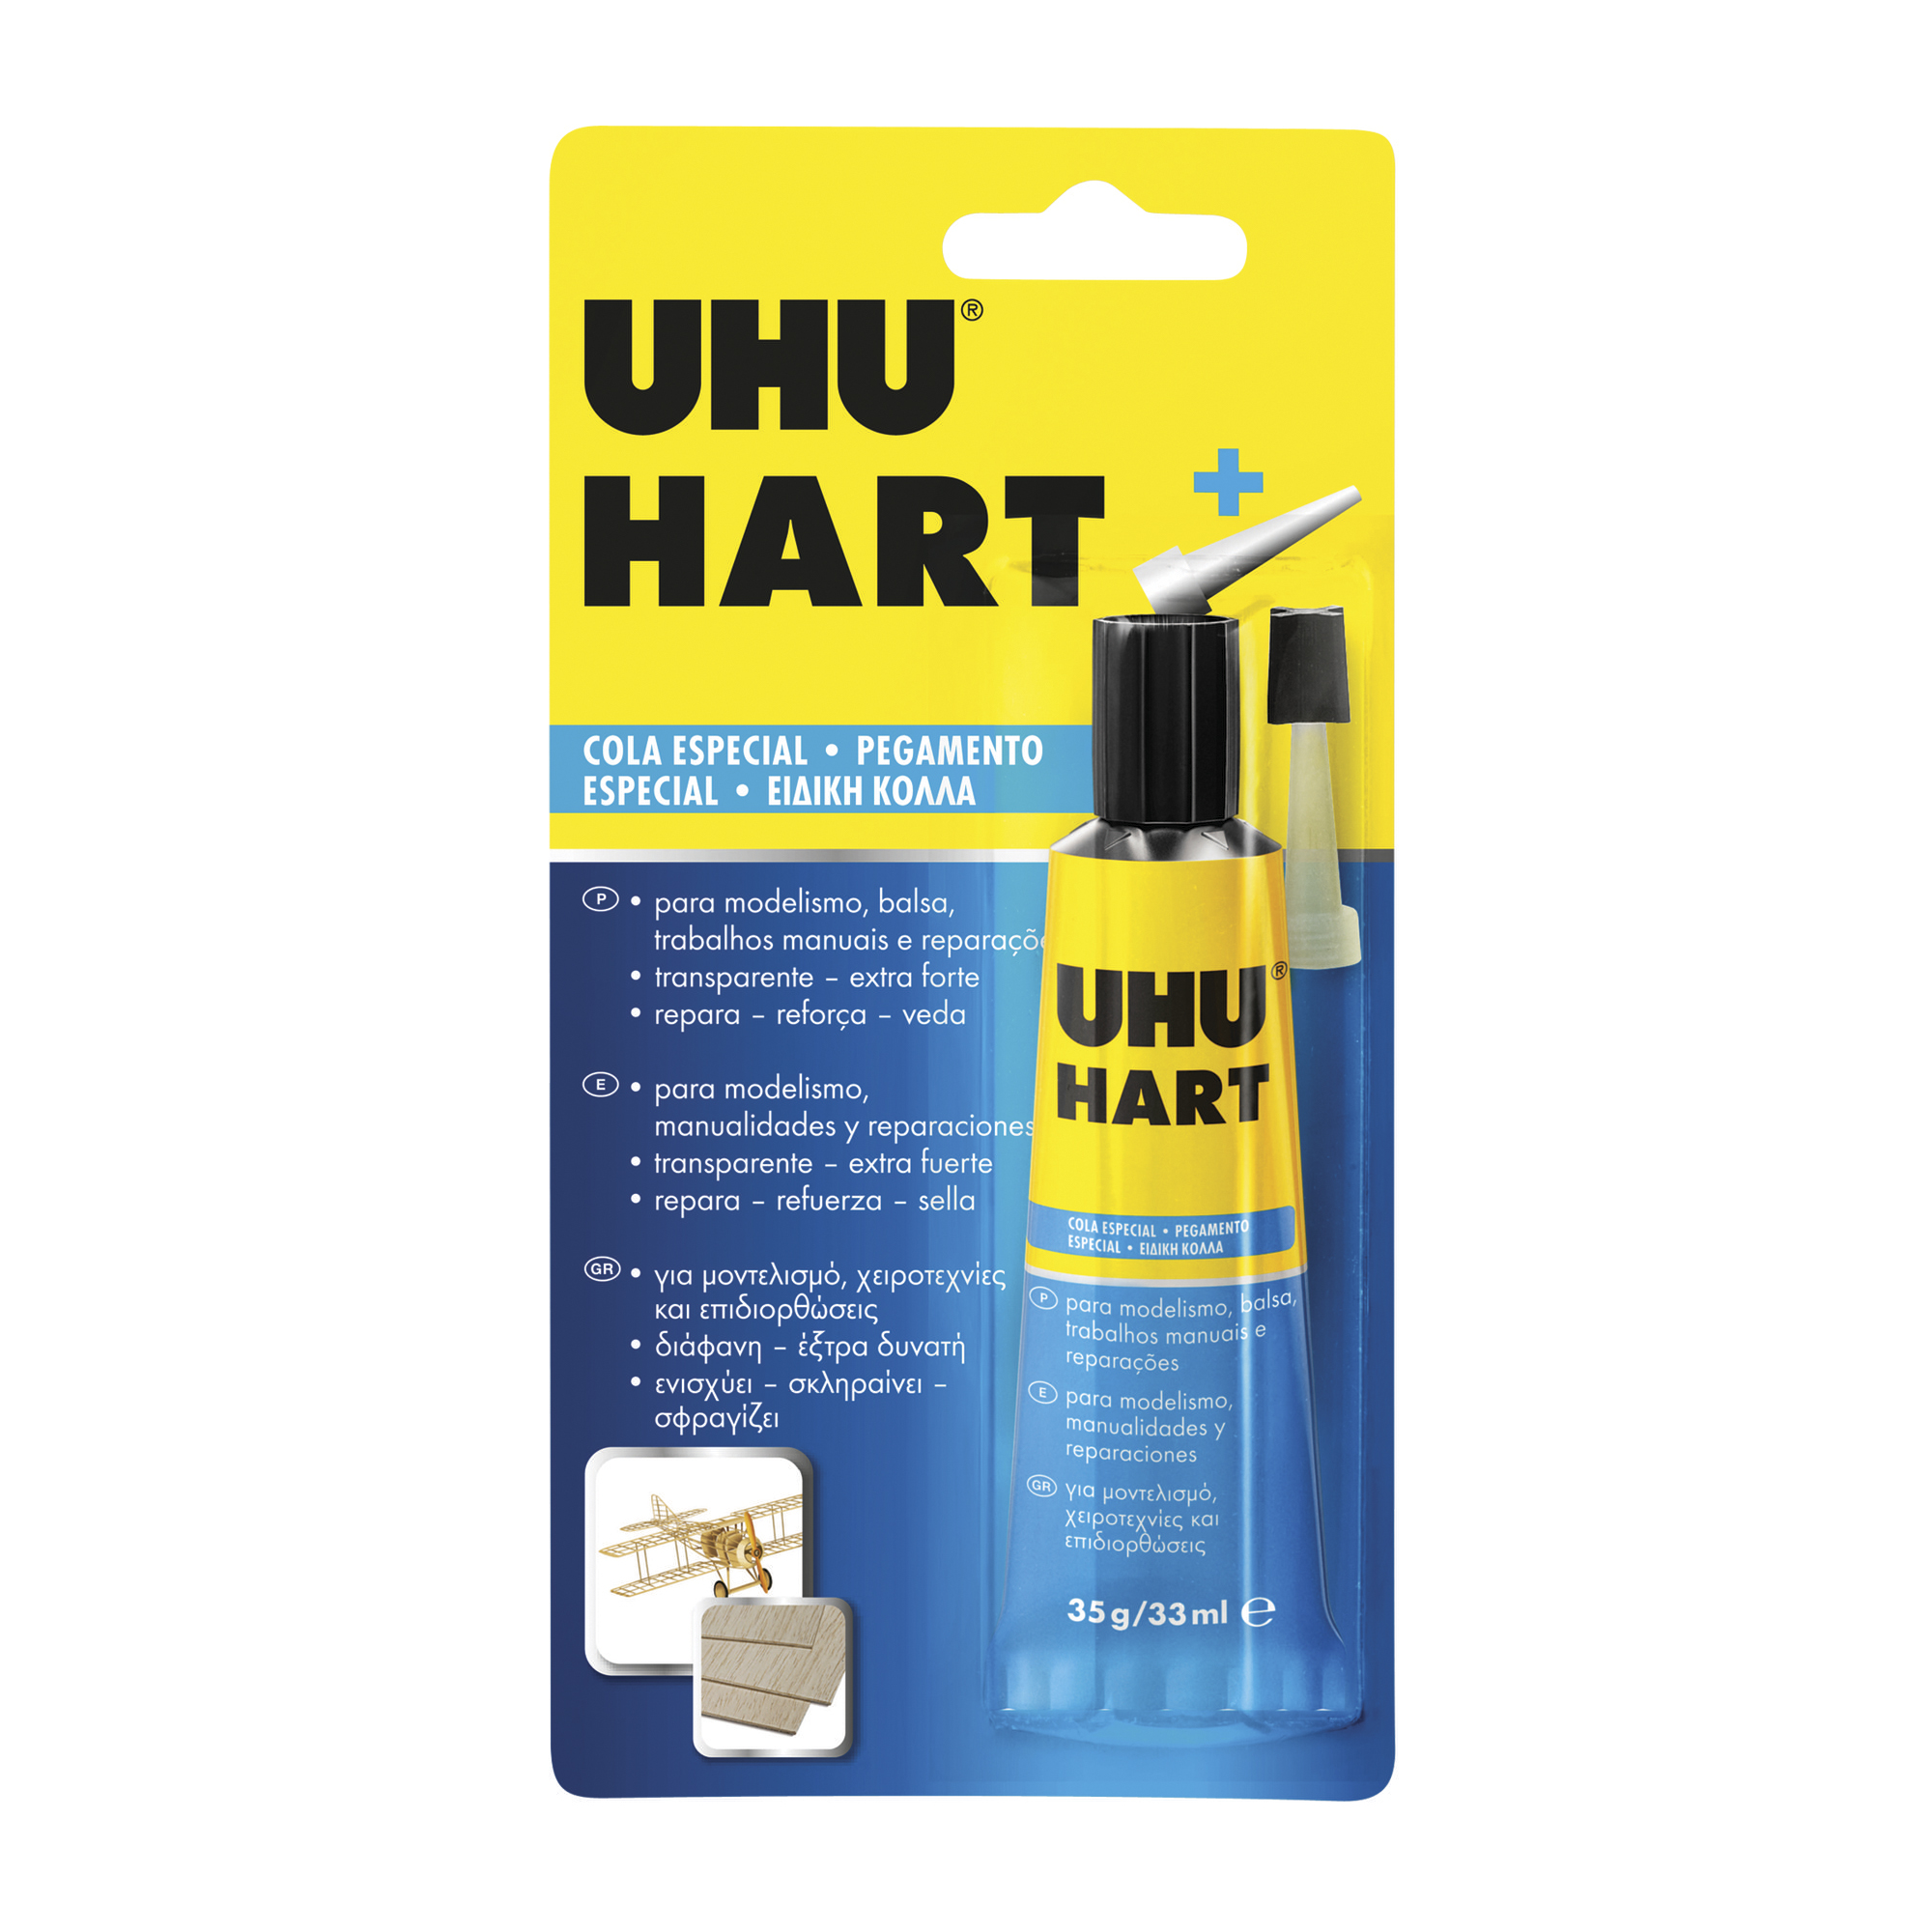 UHU hart. Cola extra fuerte para modelismo, manualidades y reparaciones.  33ml - ArtBendix